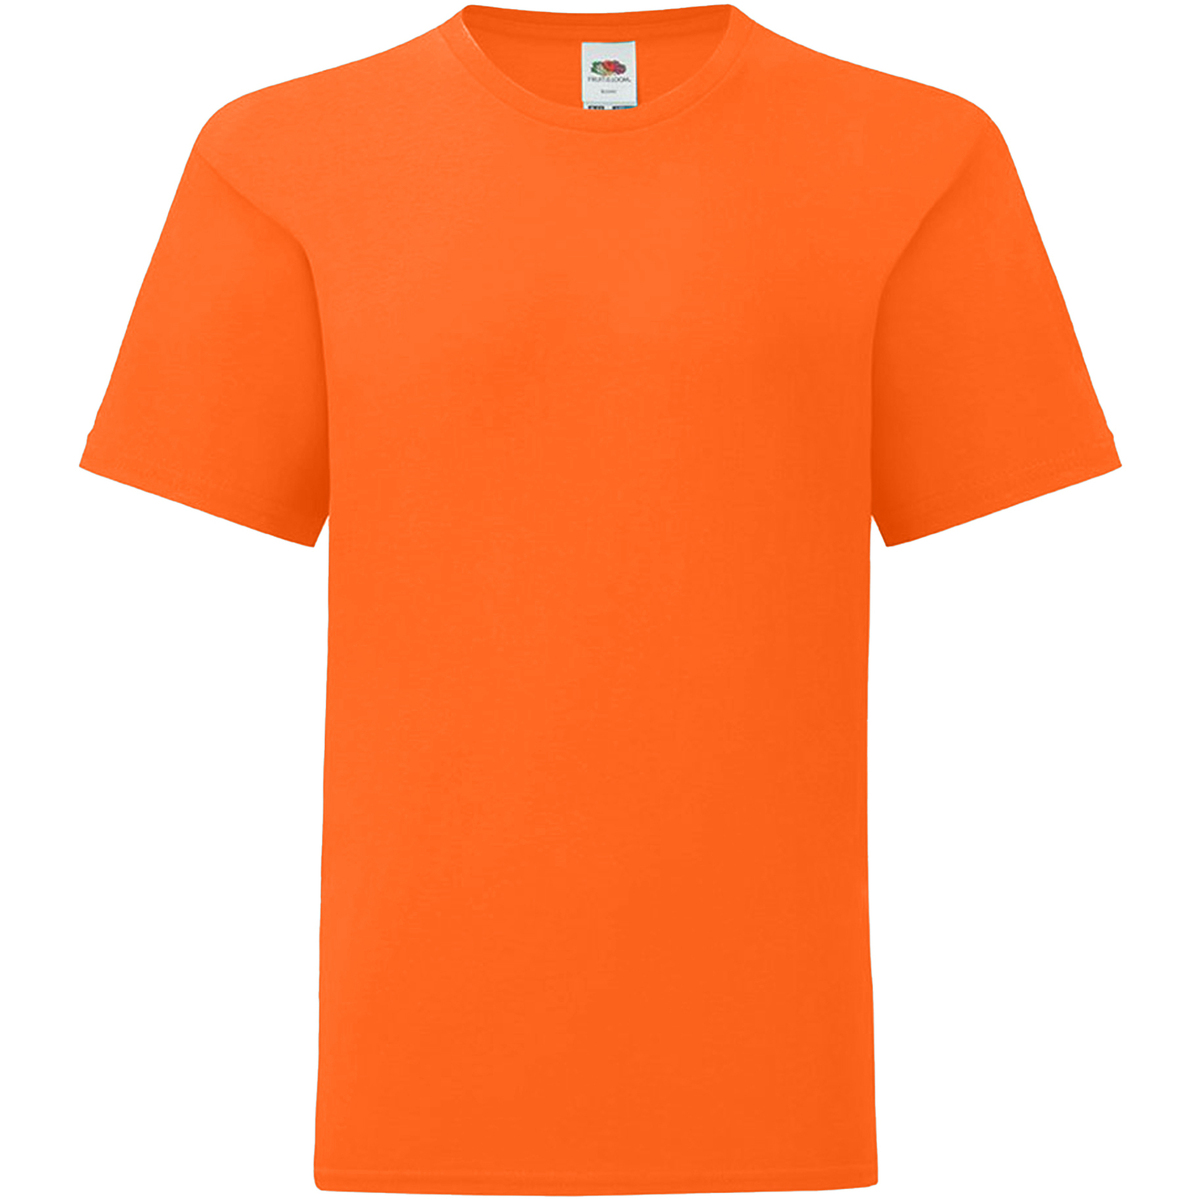 Vêtements Enfant T-shirts manches courtes Fruit Of The Loom 61023 Orange